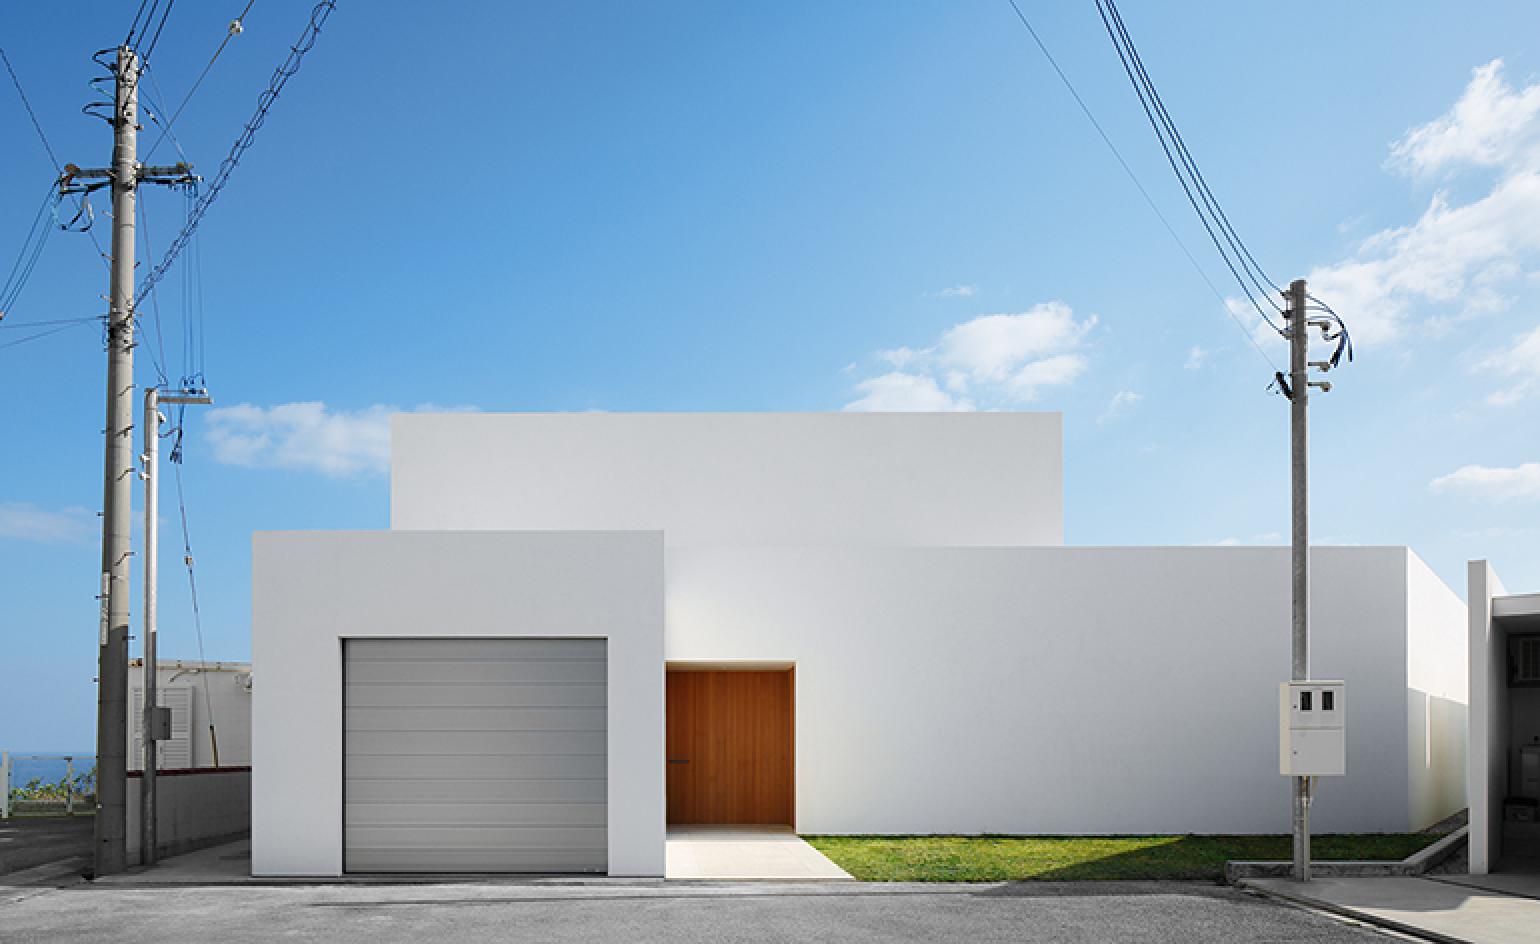 minimalistische architektur tapete,die architektur,haus,gebäude,himmel,freileitung